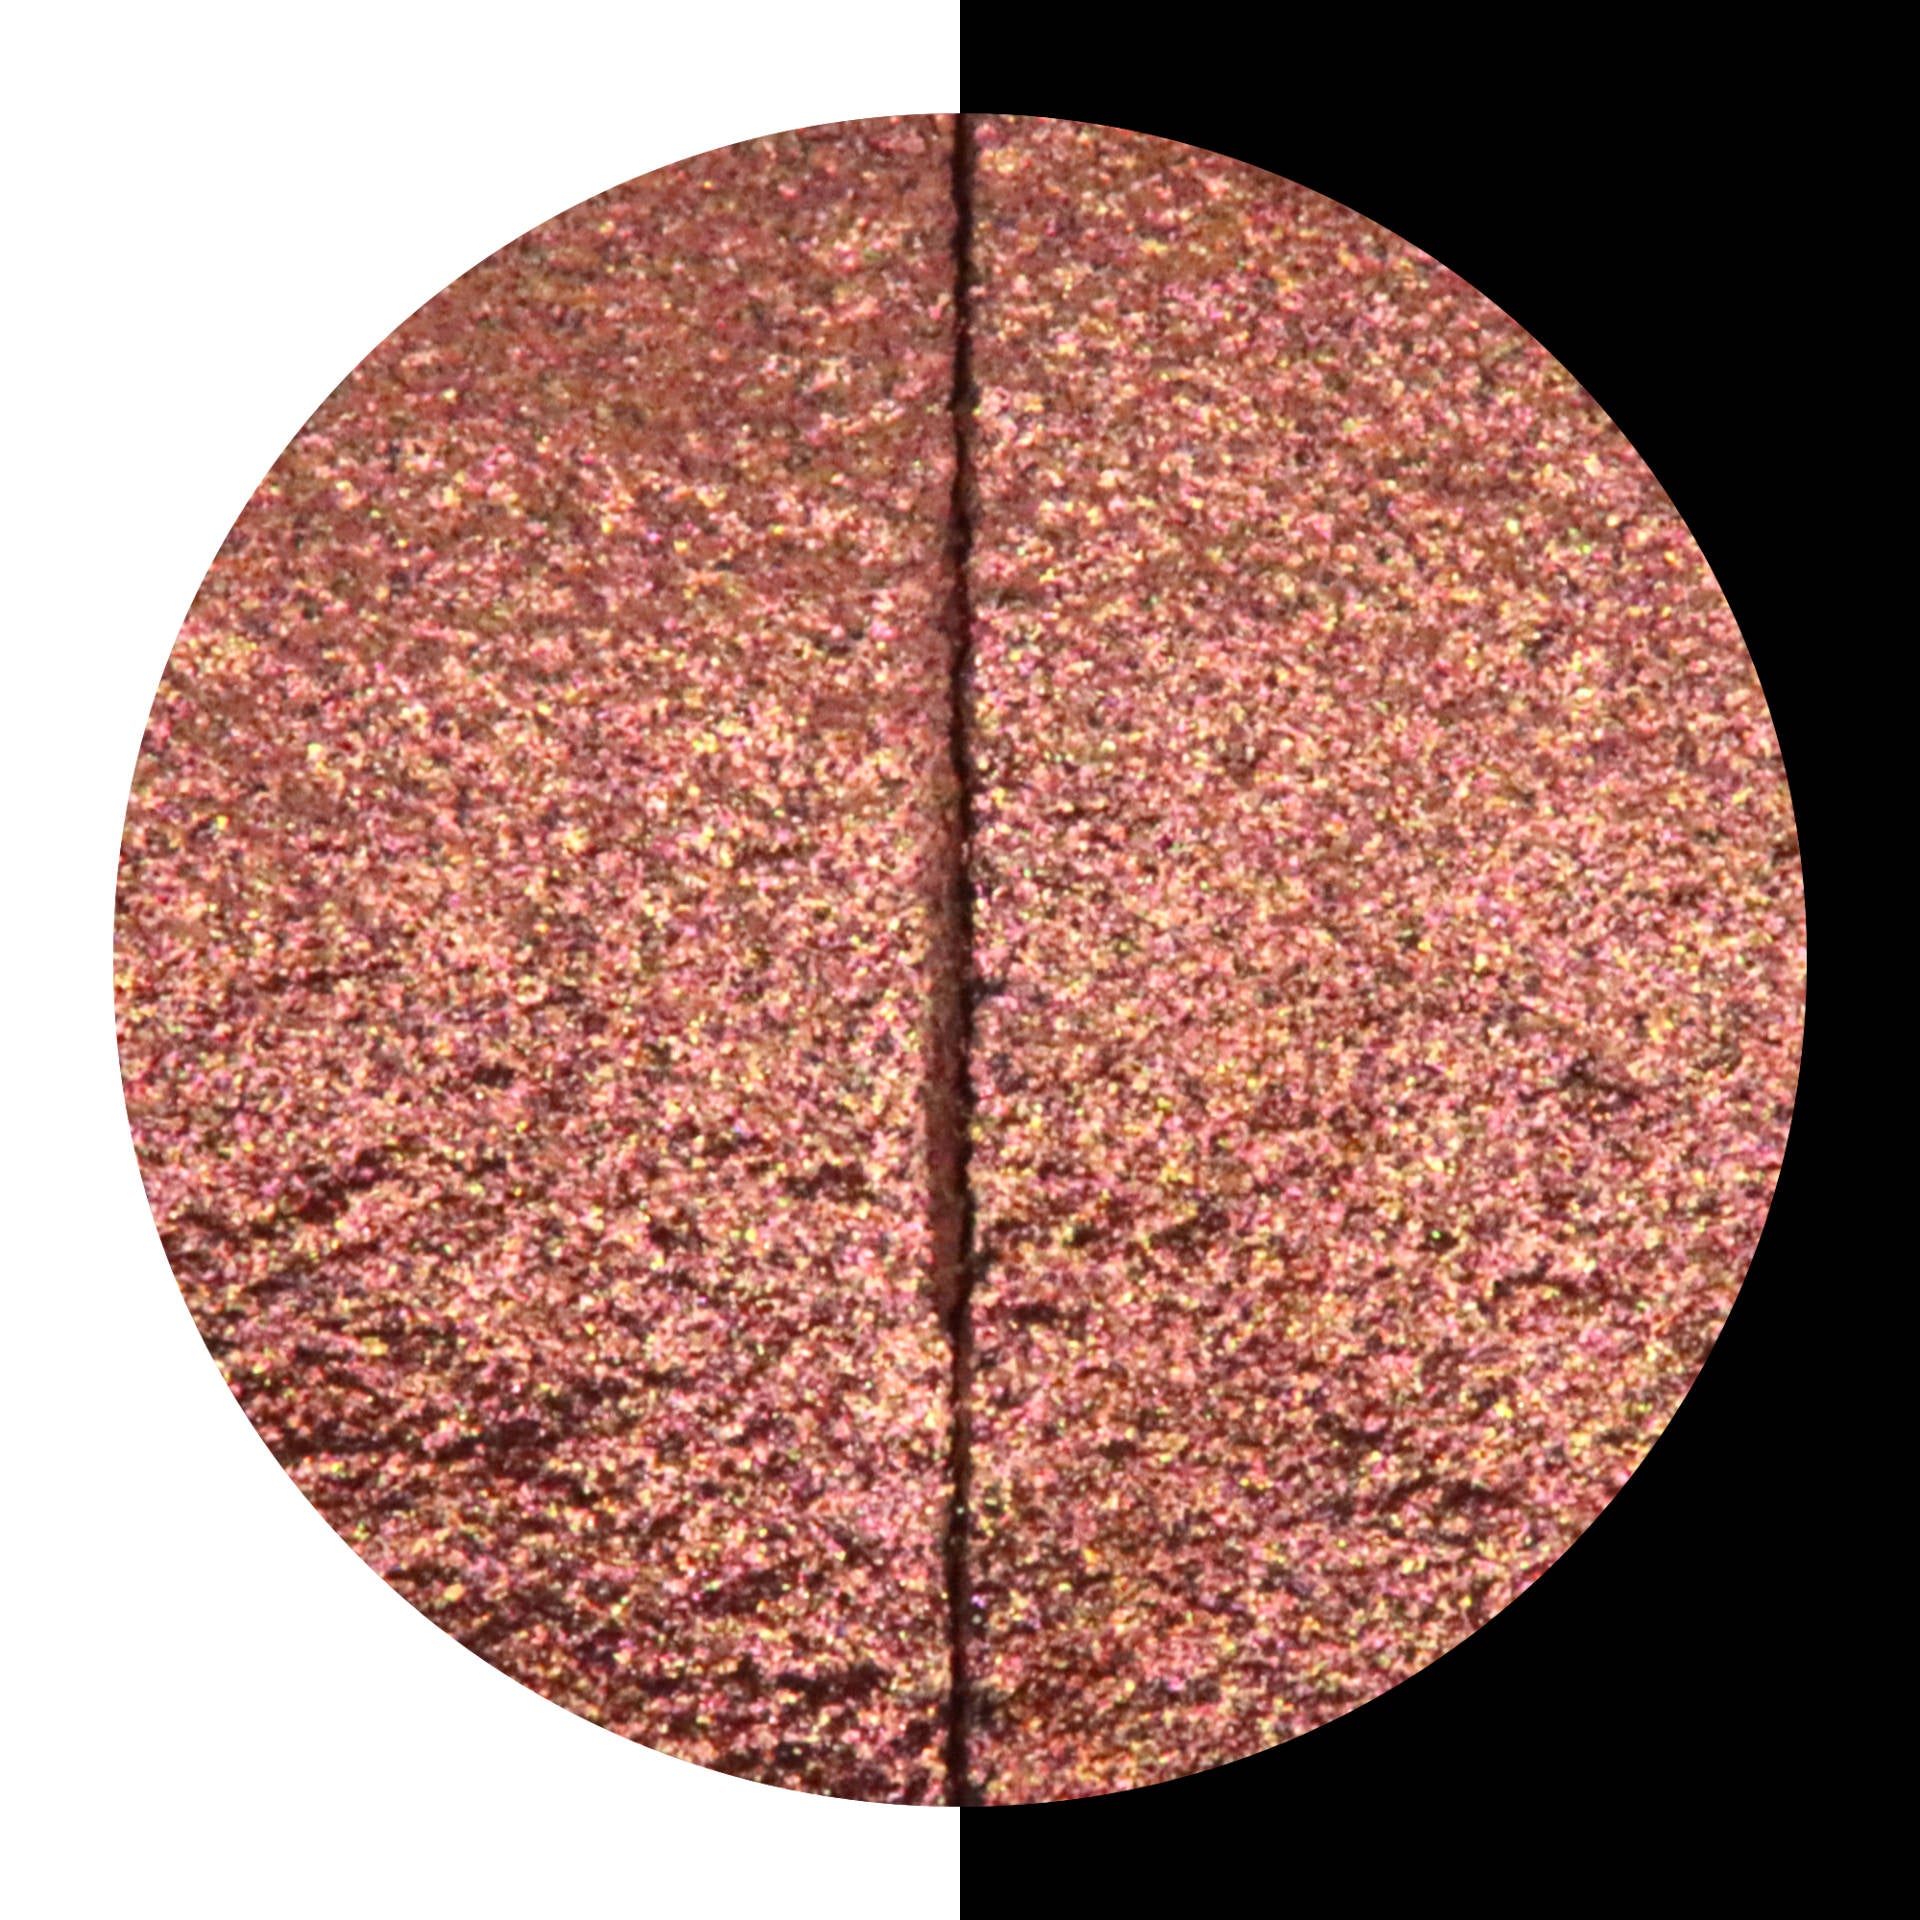 COLIRO FINETEC Pearl Colors Refill 30mm Cinnamon